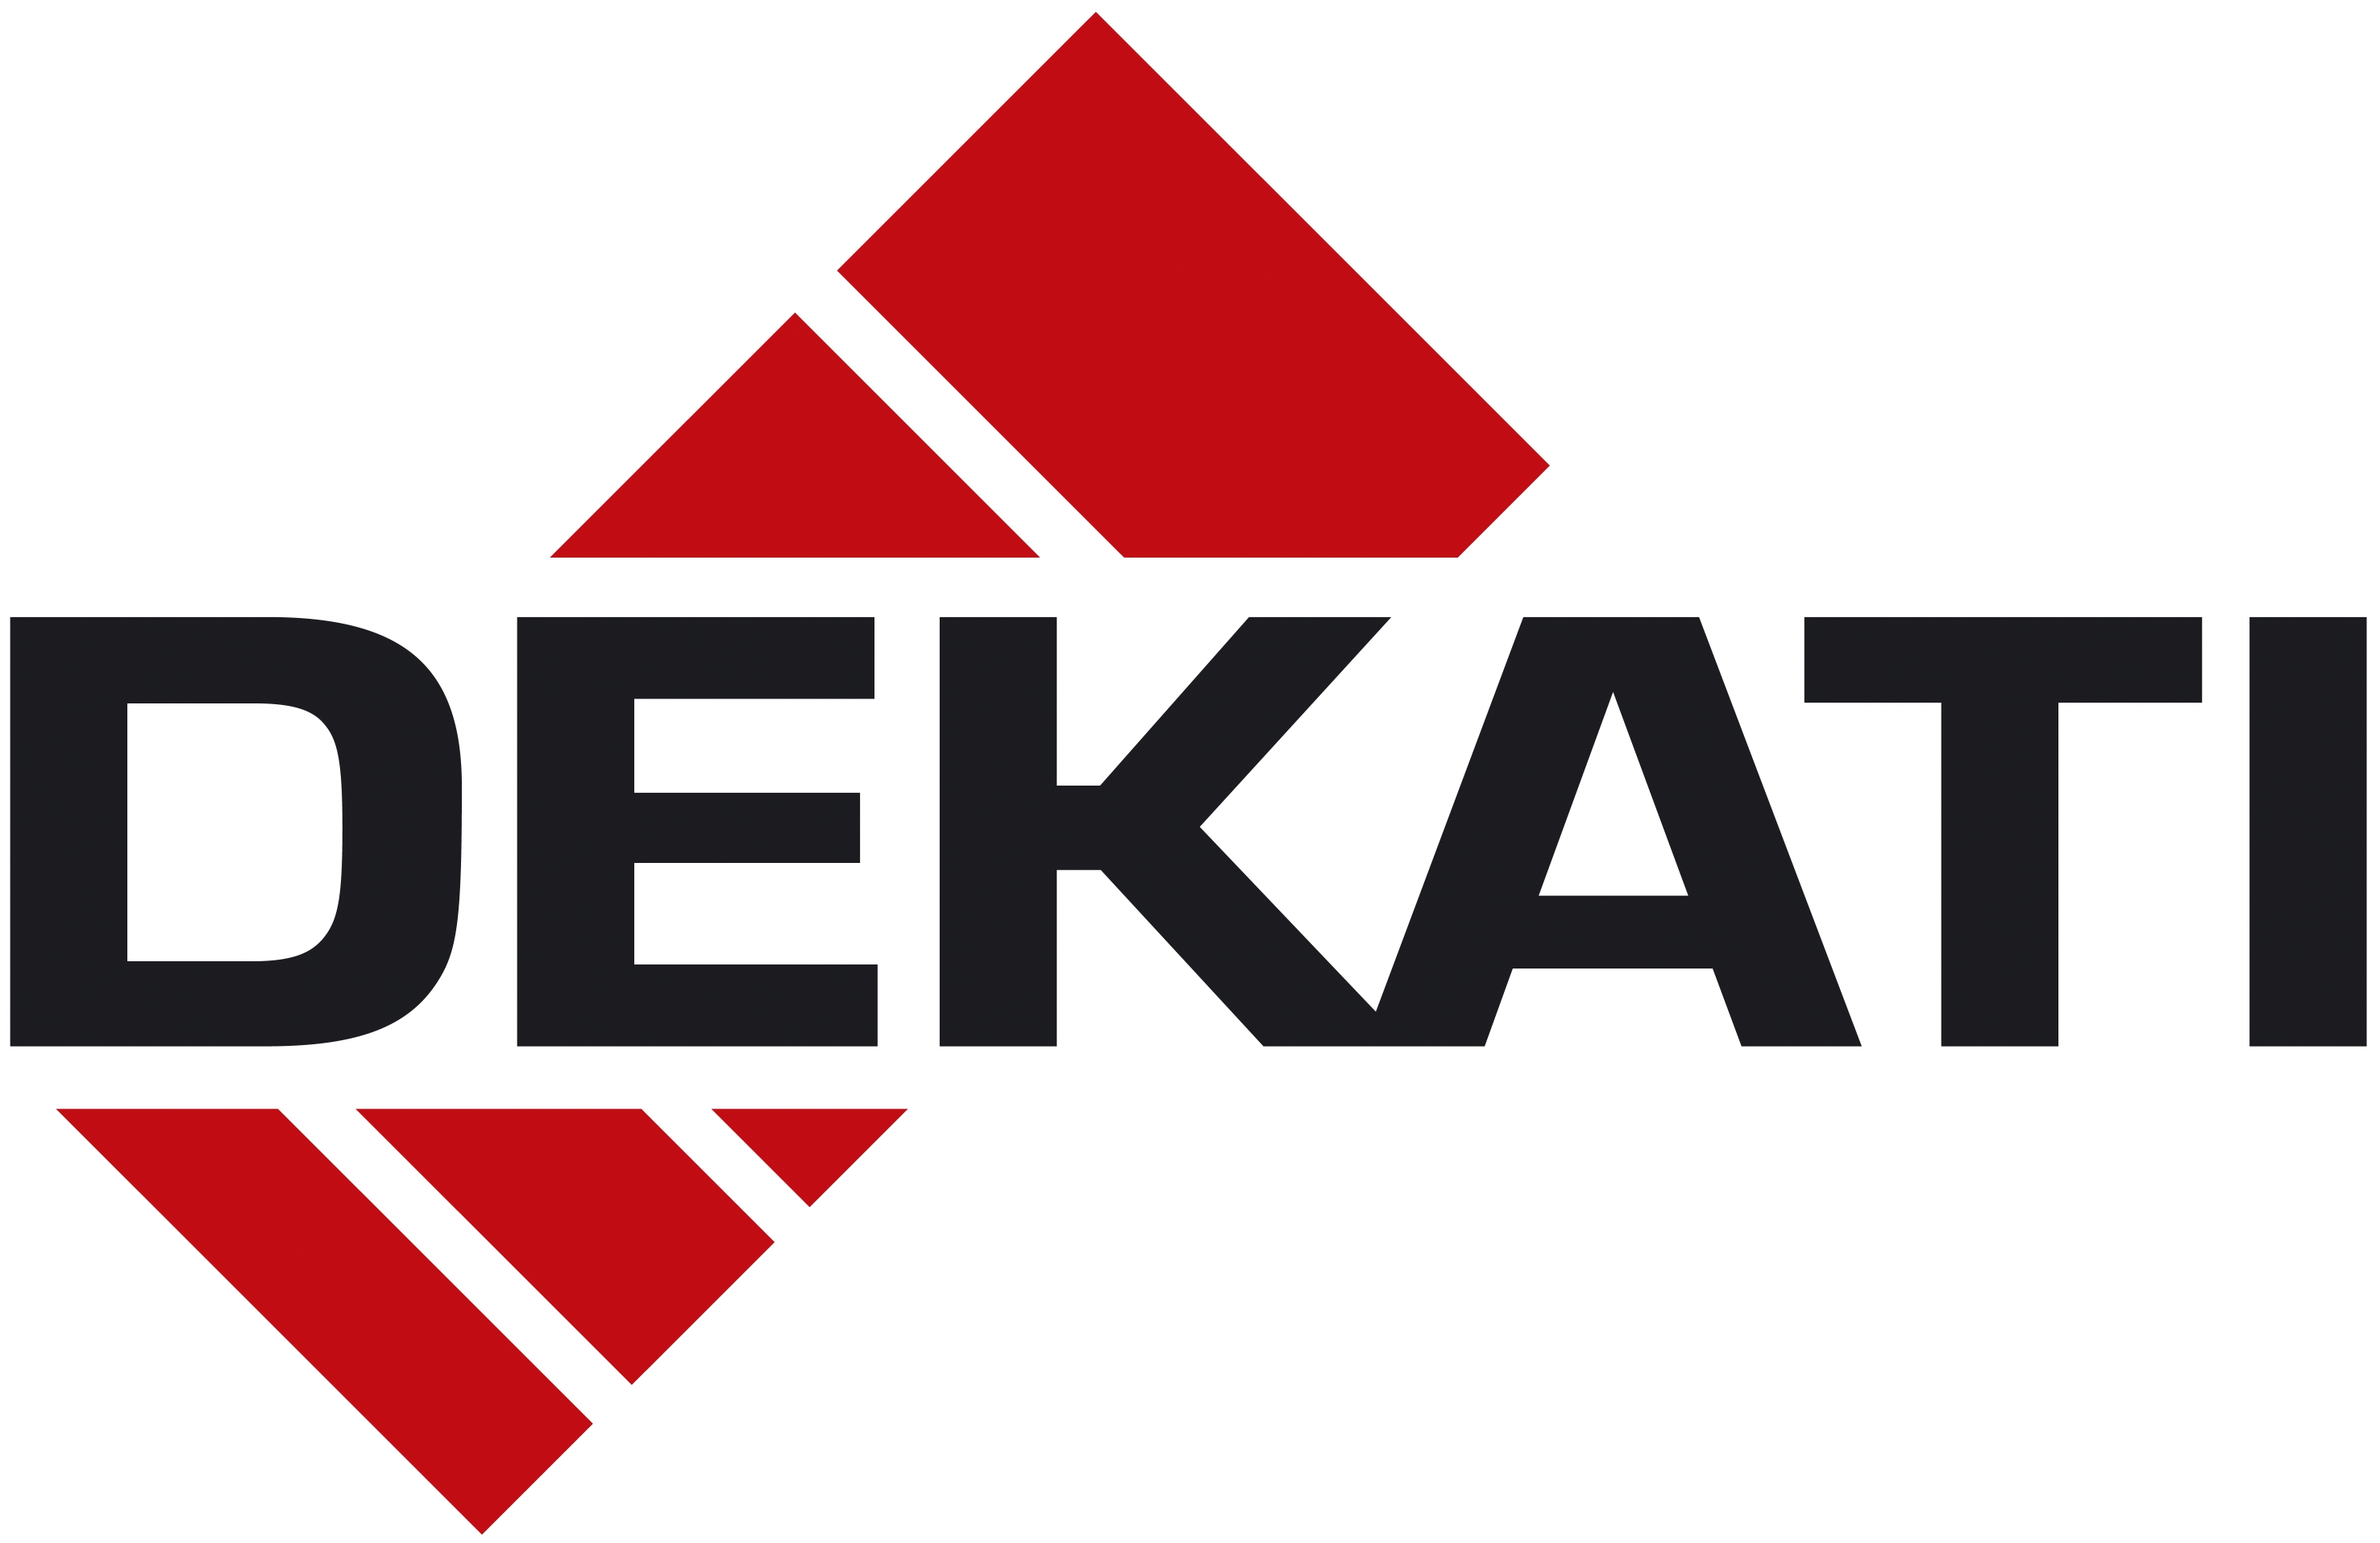 Dekati logo